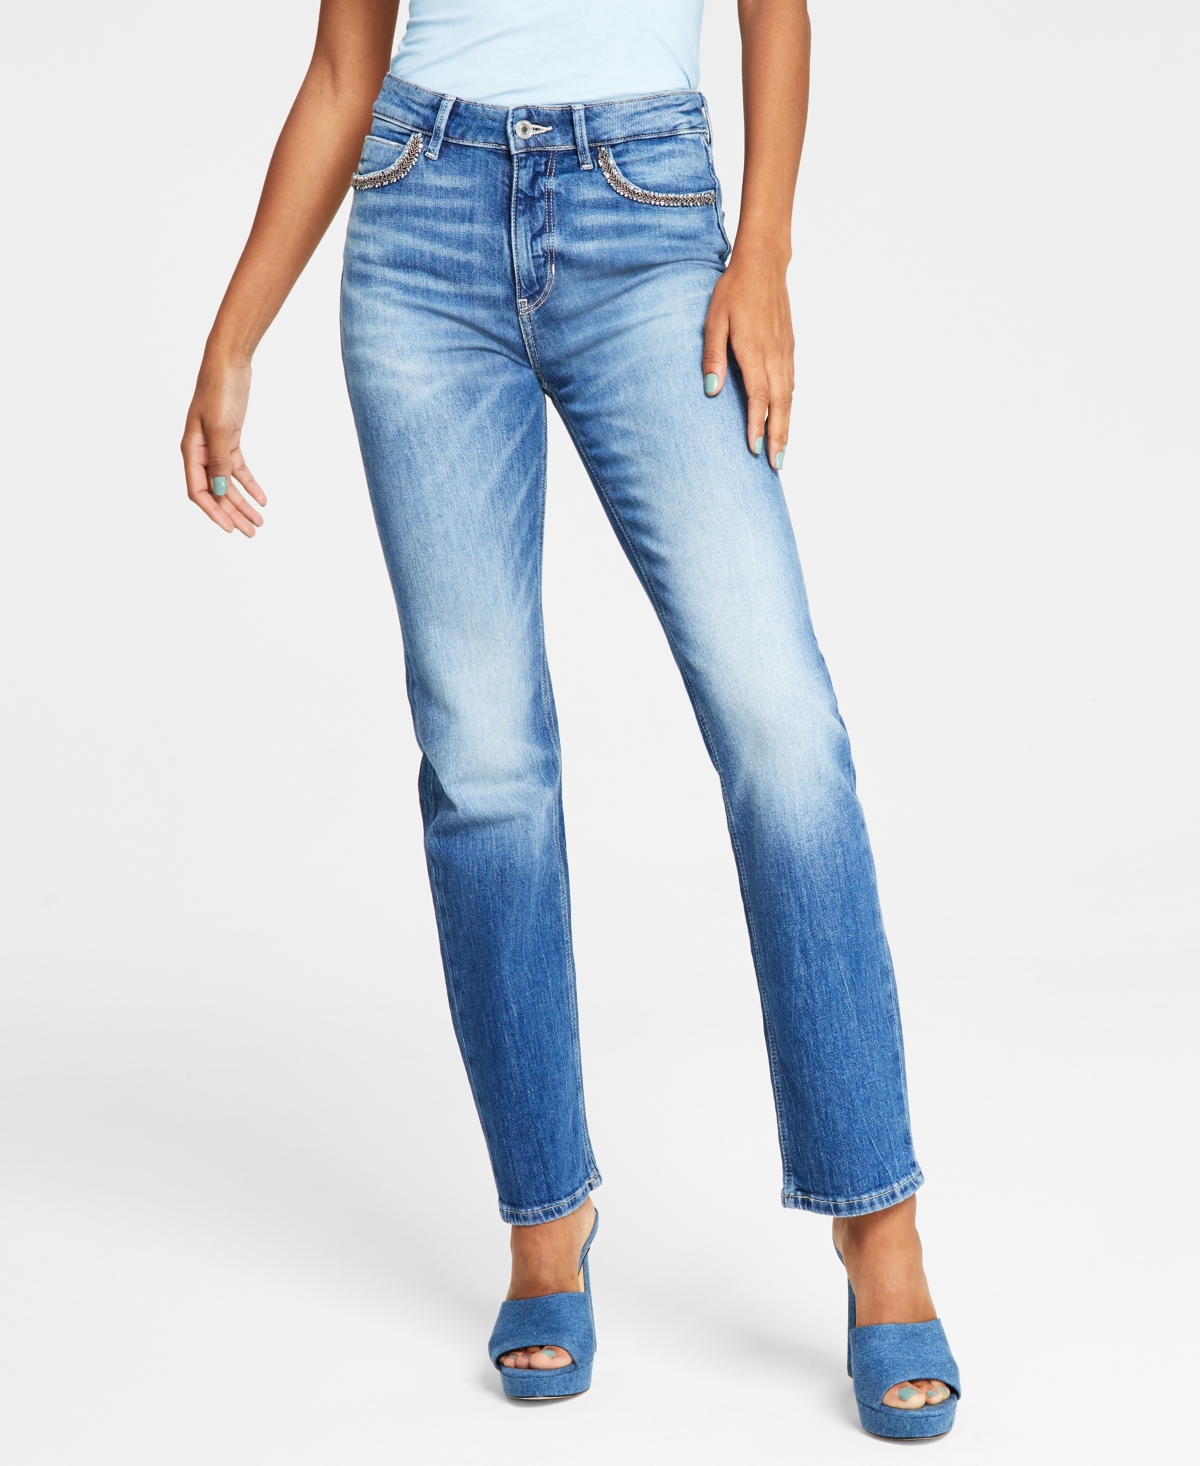 Guess Women's 1981 Faded Straight-leg Denim Jeans In Feel Good